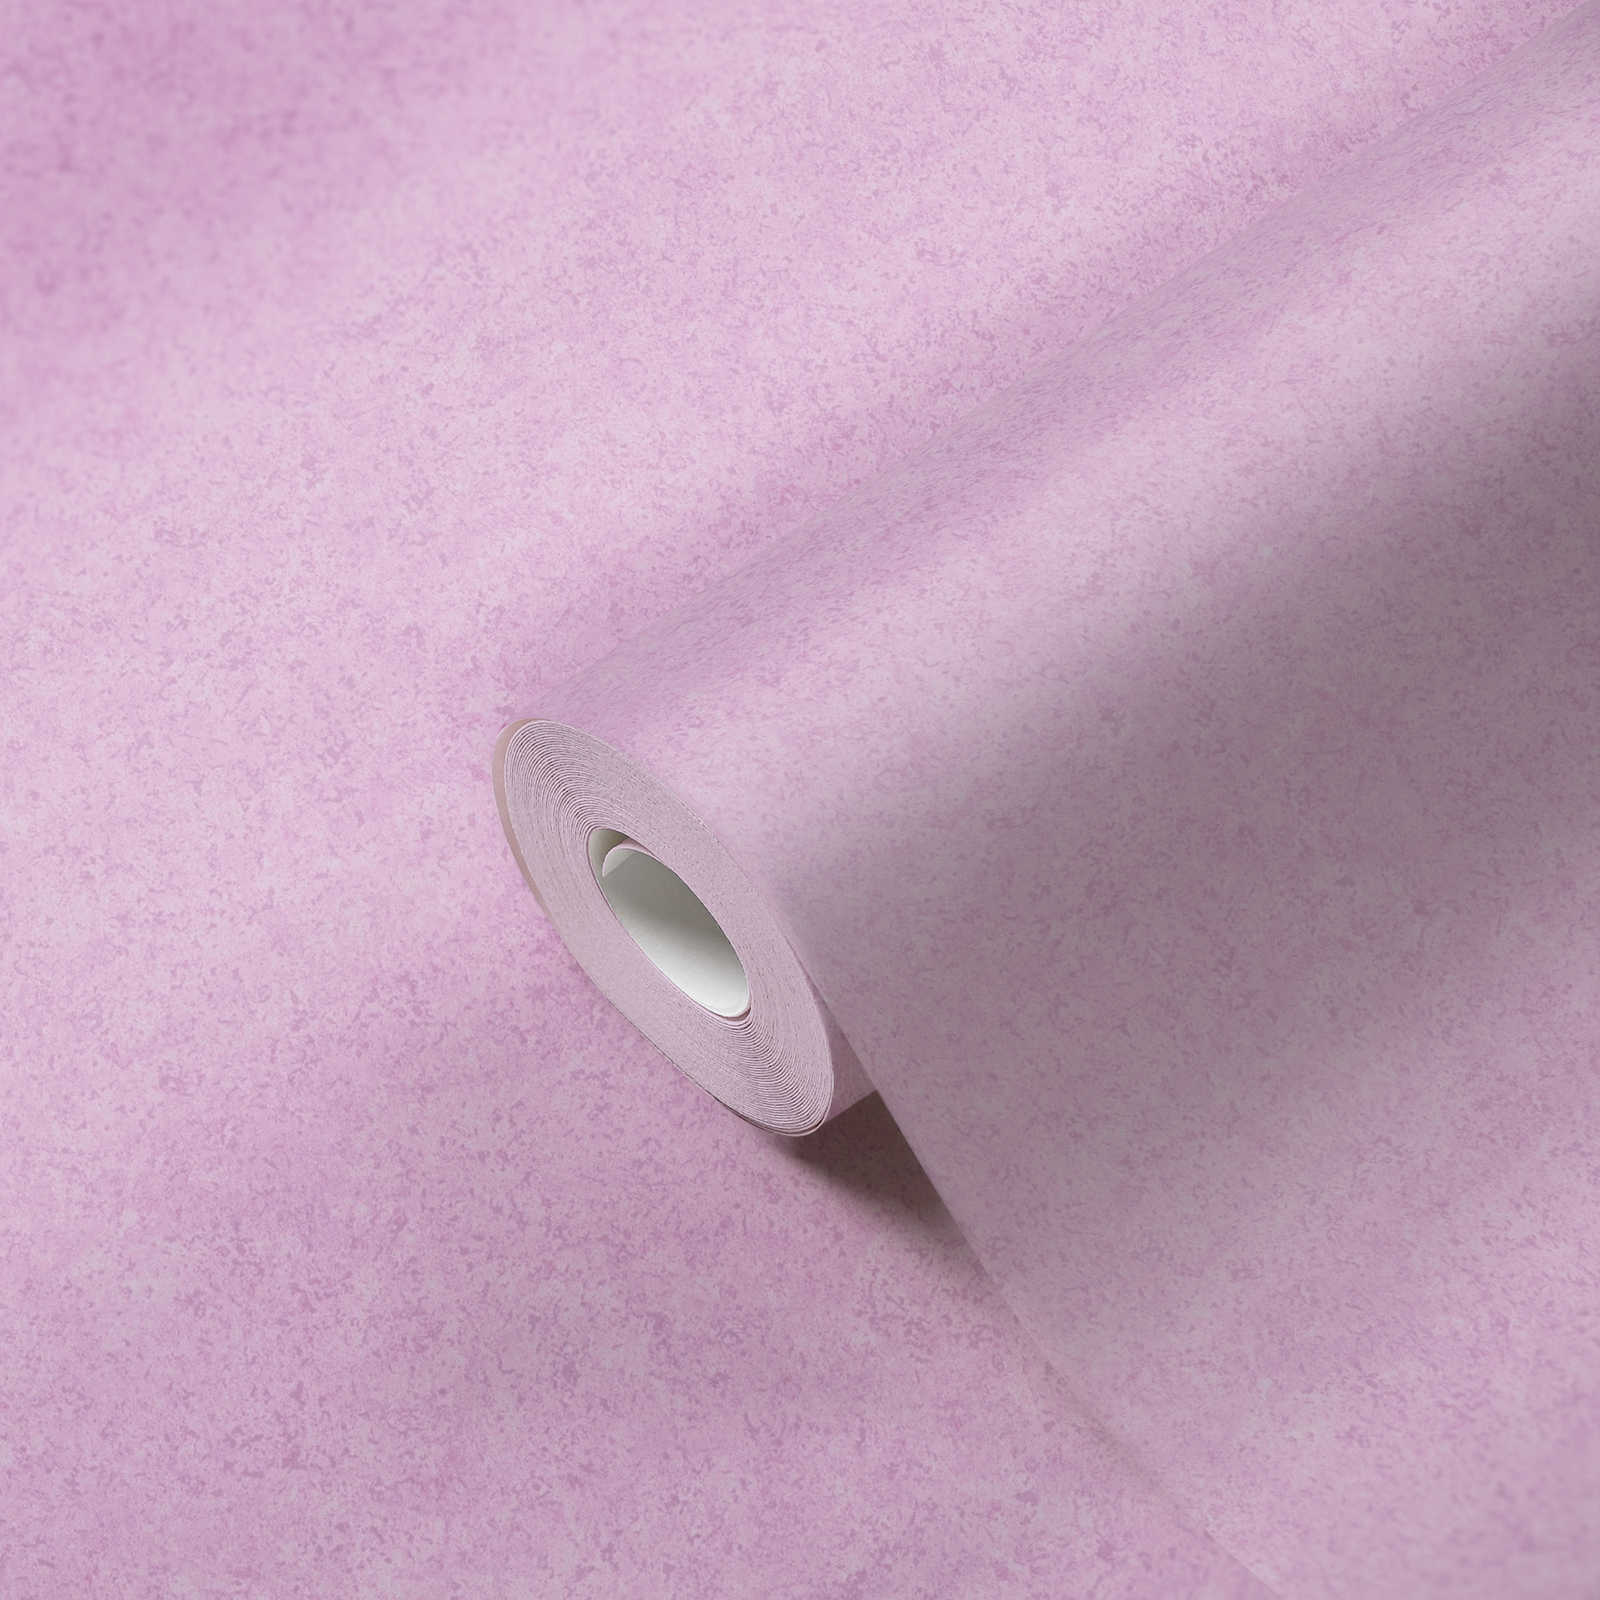             Papier peint intissé rose aspect plâtre avec motif mat - rose
        